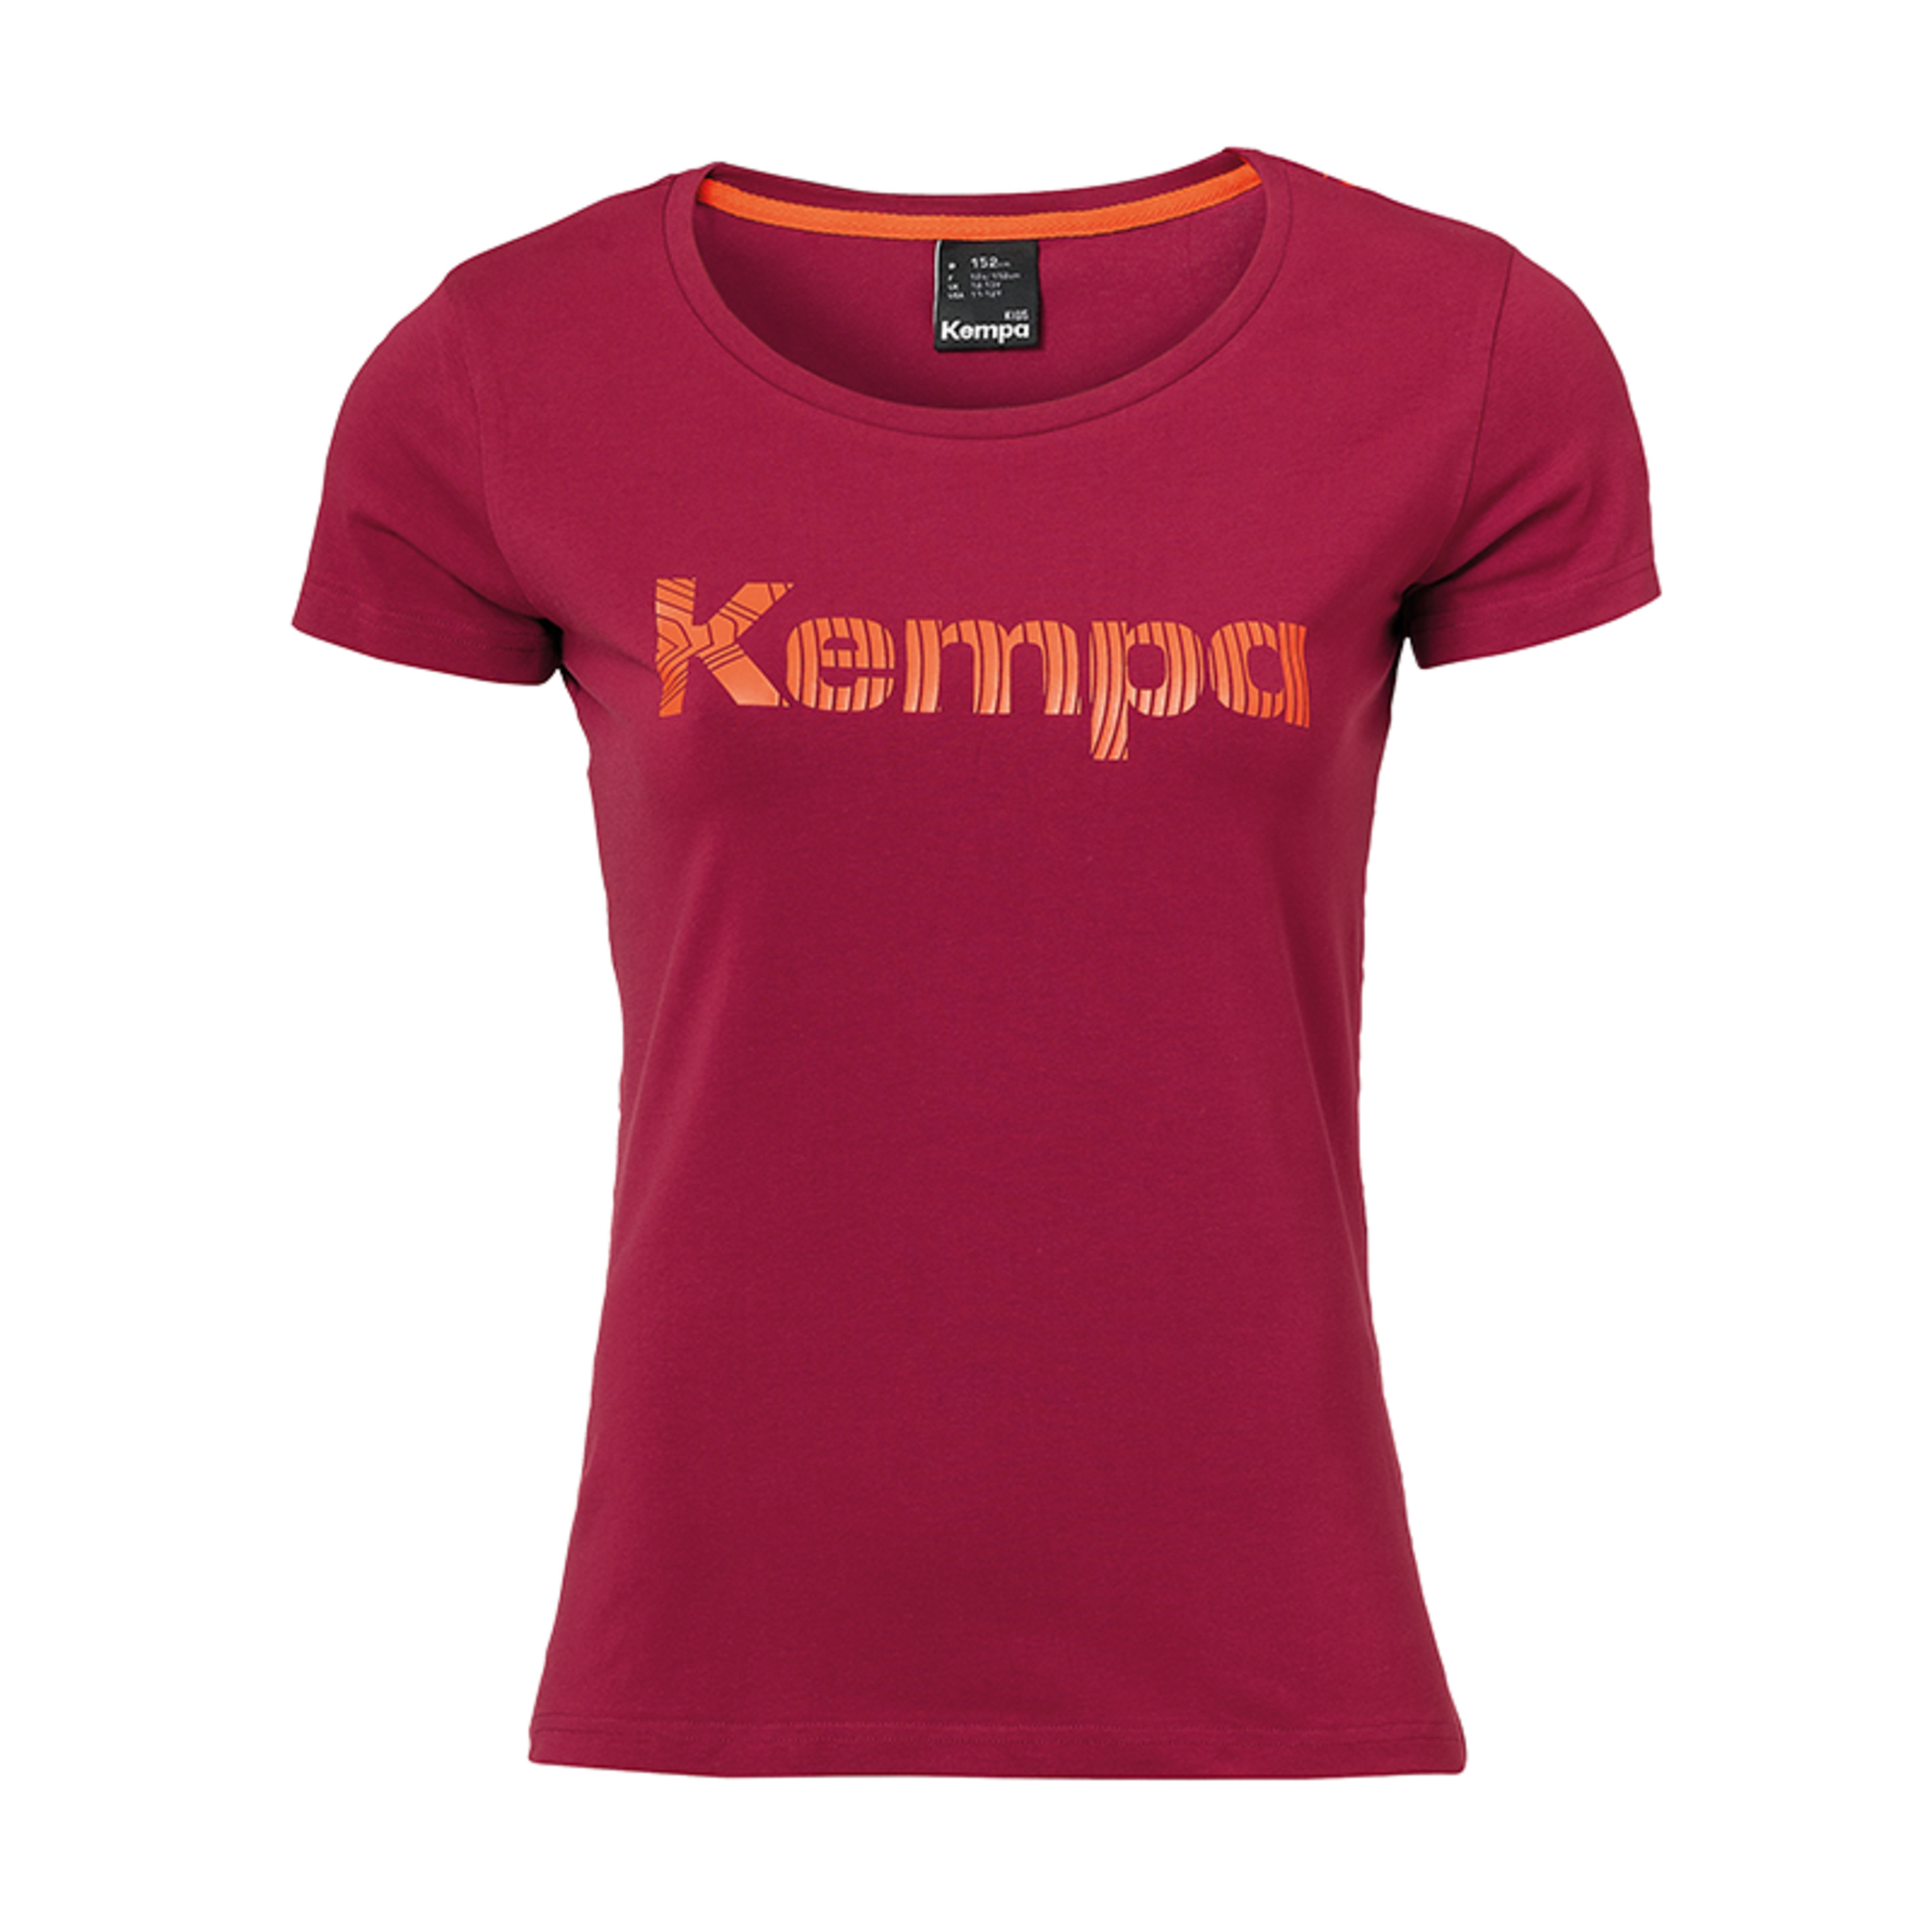 Graphic T-shirt Girls Rojo Oscuro Kempa - rojo - 